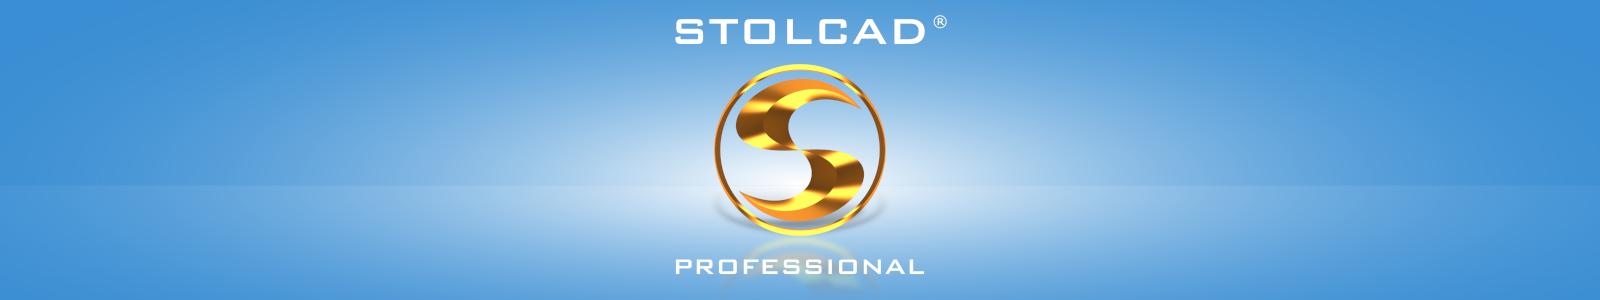 Stolcad Professional - Profesjonalny program dla producentów okien i drzwi